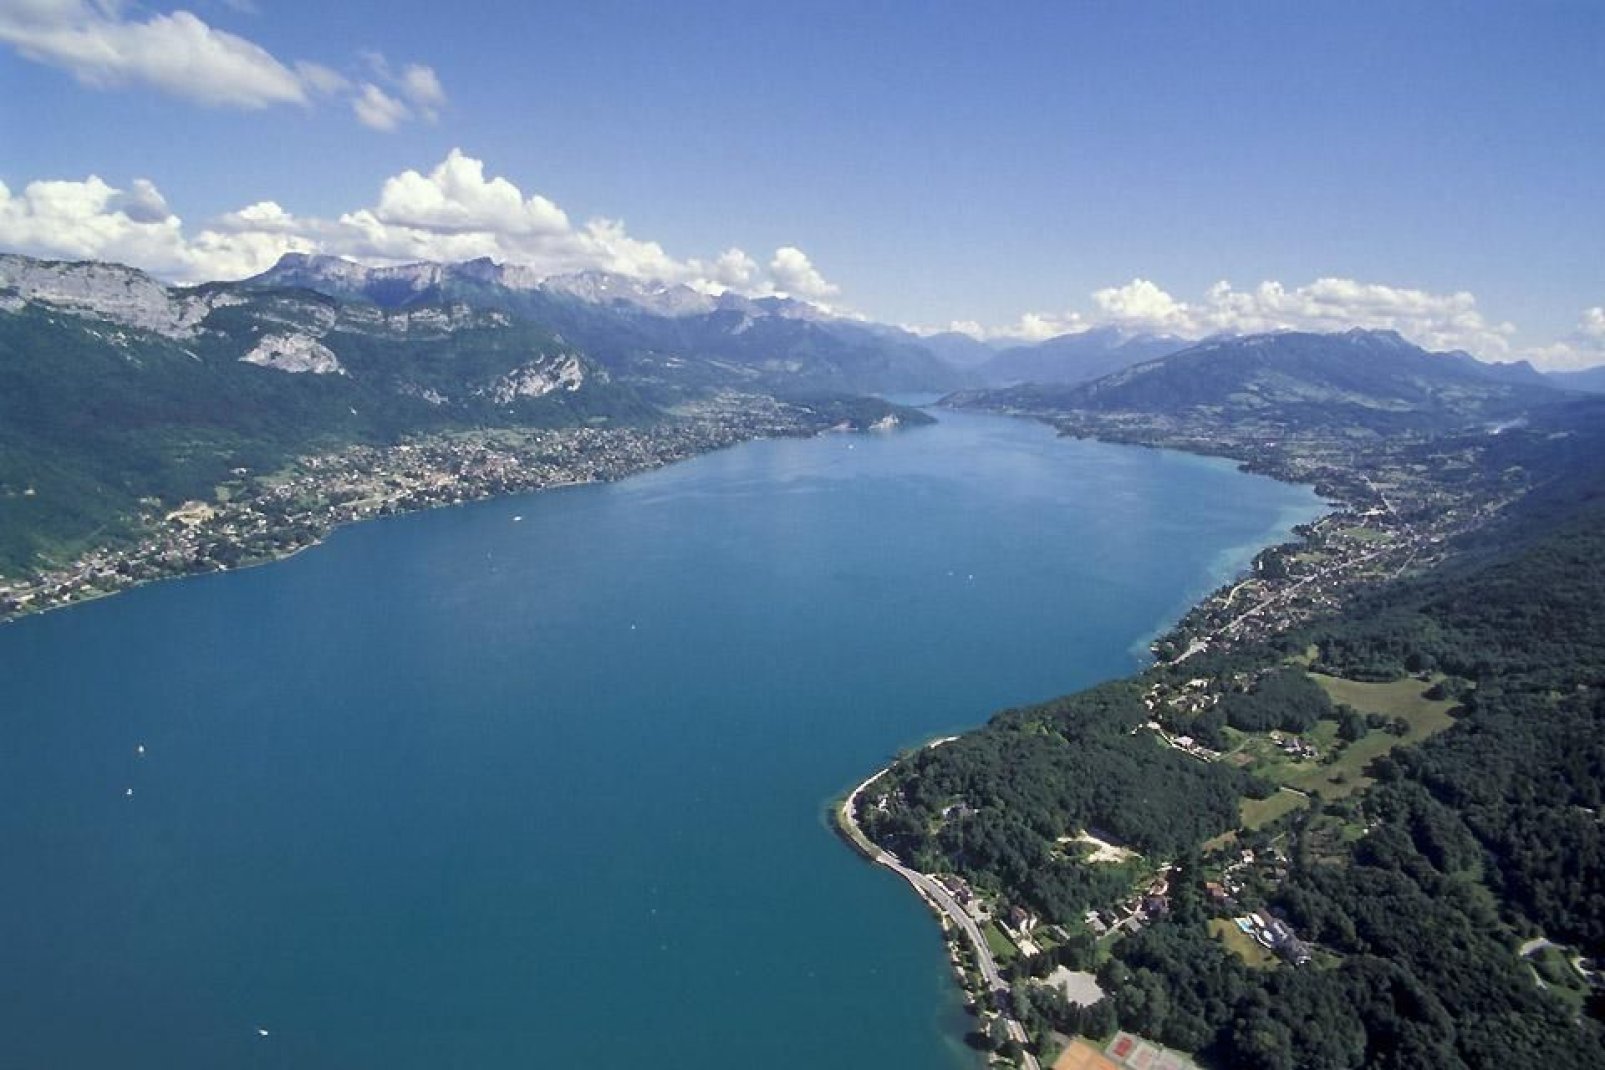 Das auch als "blauer See" bezeichnete Binnengewässer bedeckt eine Fläche von annähernd 28 km². Die Umgebung des Sees ist einzigartig und besticht durch eine unvergleichliche Flora und Fauna.